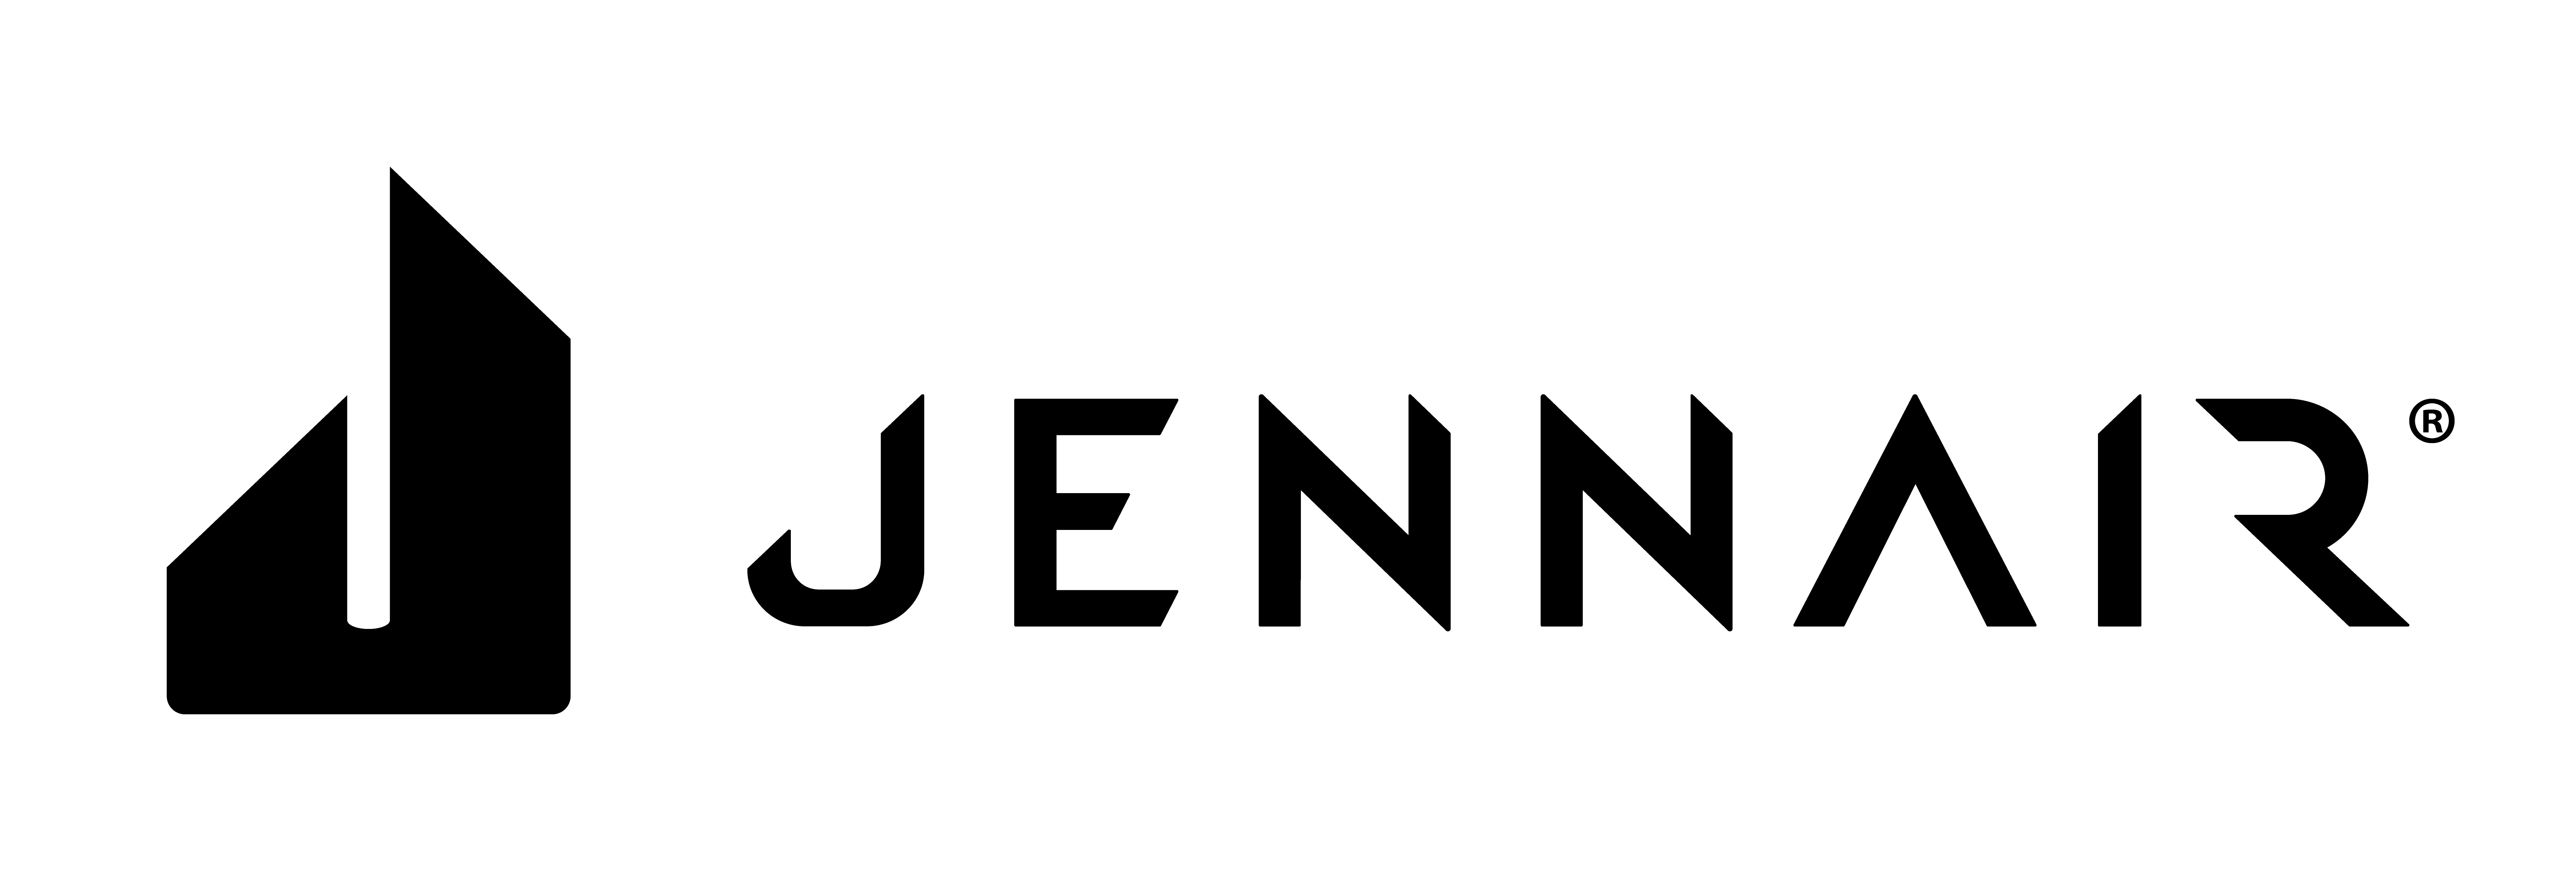 JennAir kitchen 2021